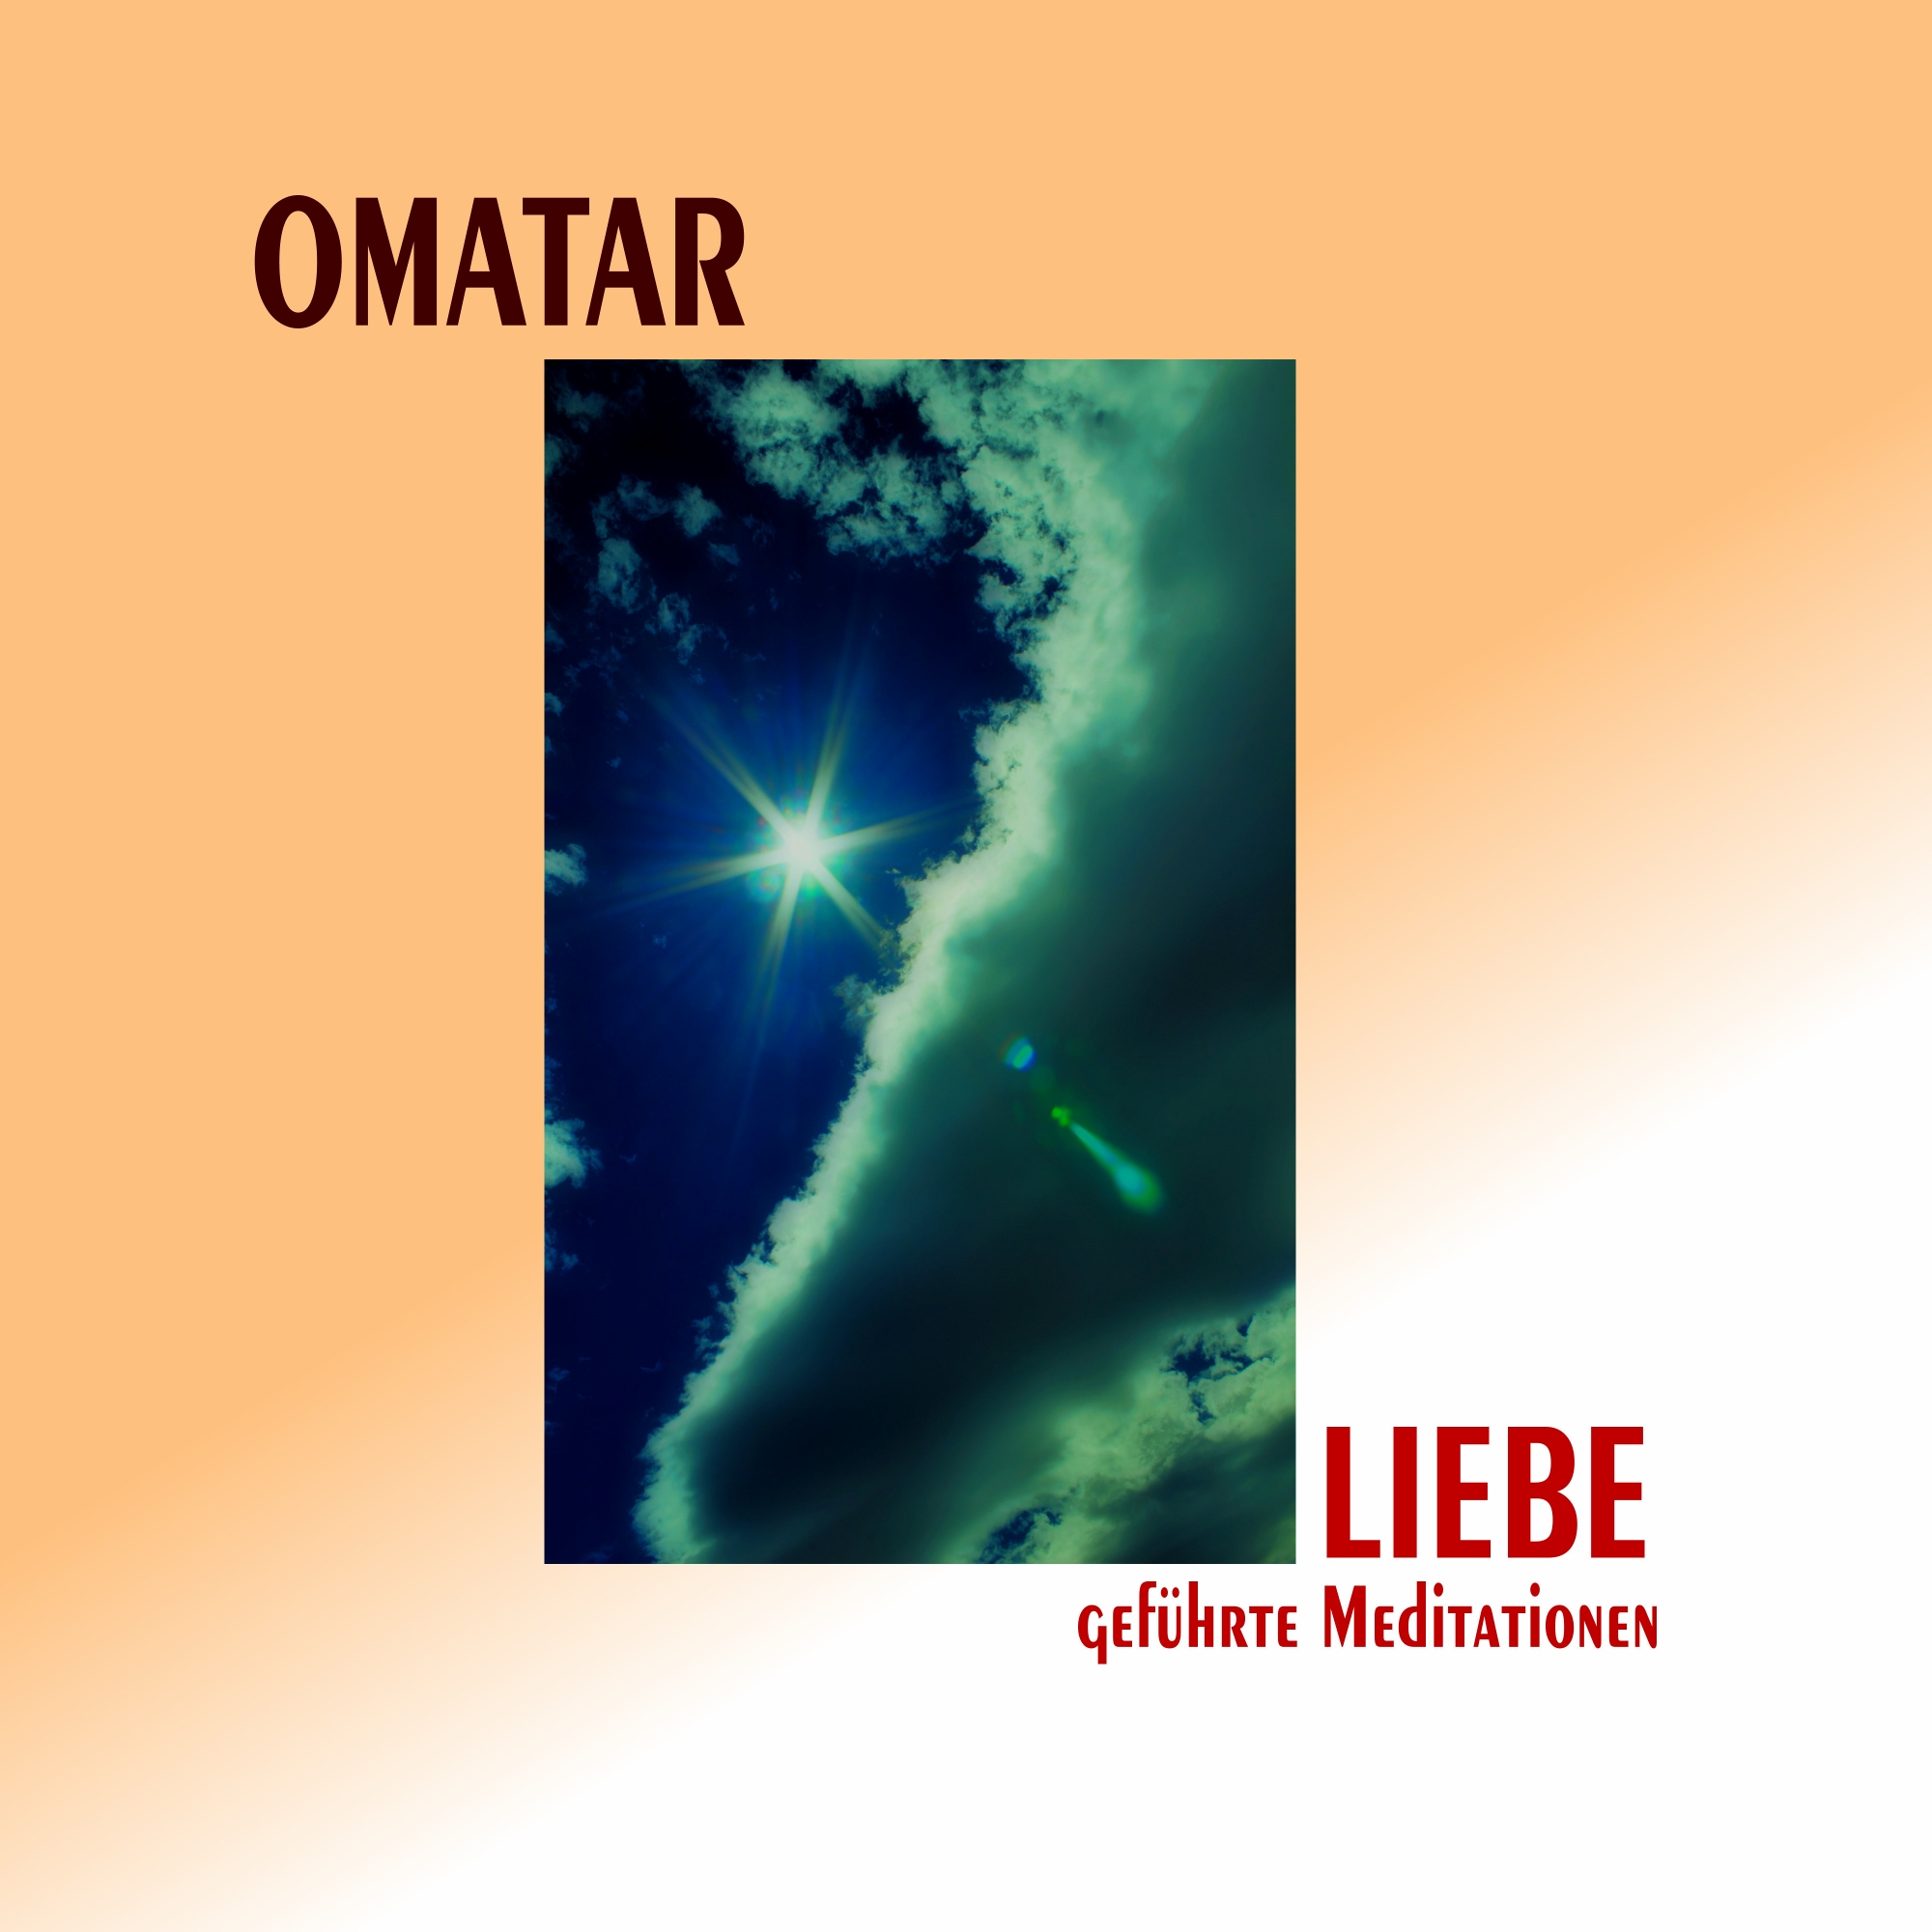 Omatar-Liebe-geführte-Mediationen